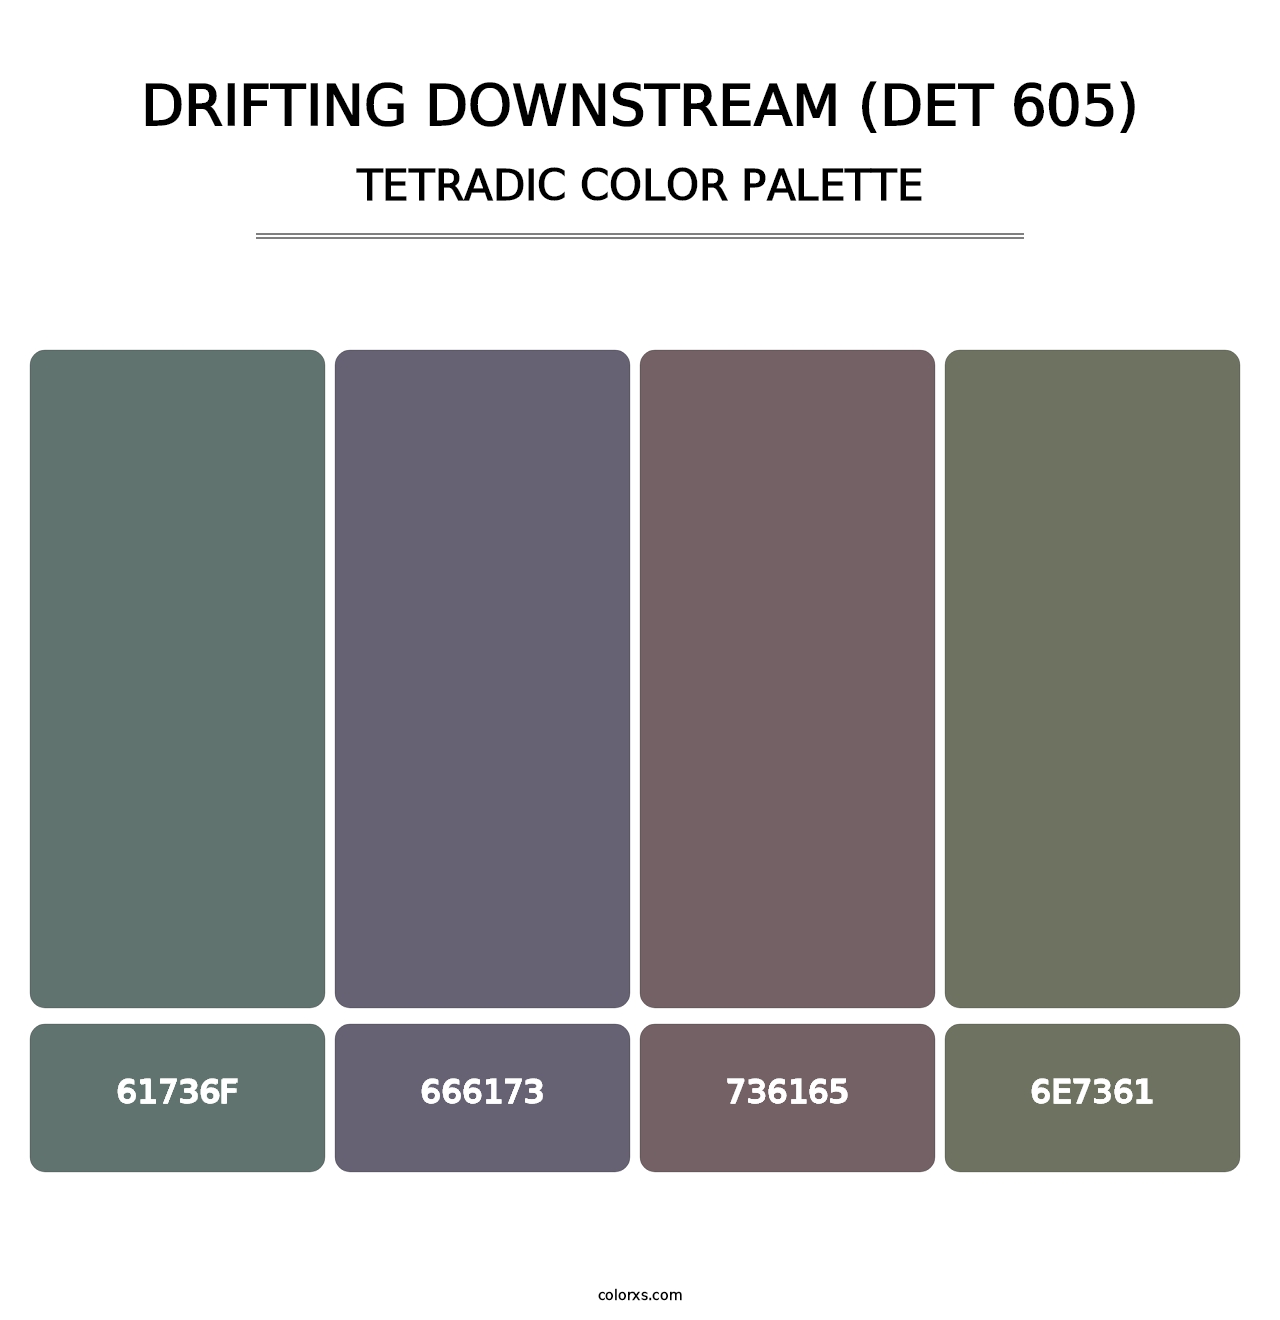 Drifting Downstream (DET 605) - Tetradic Color Palette